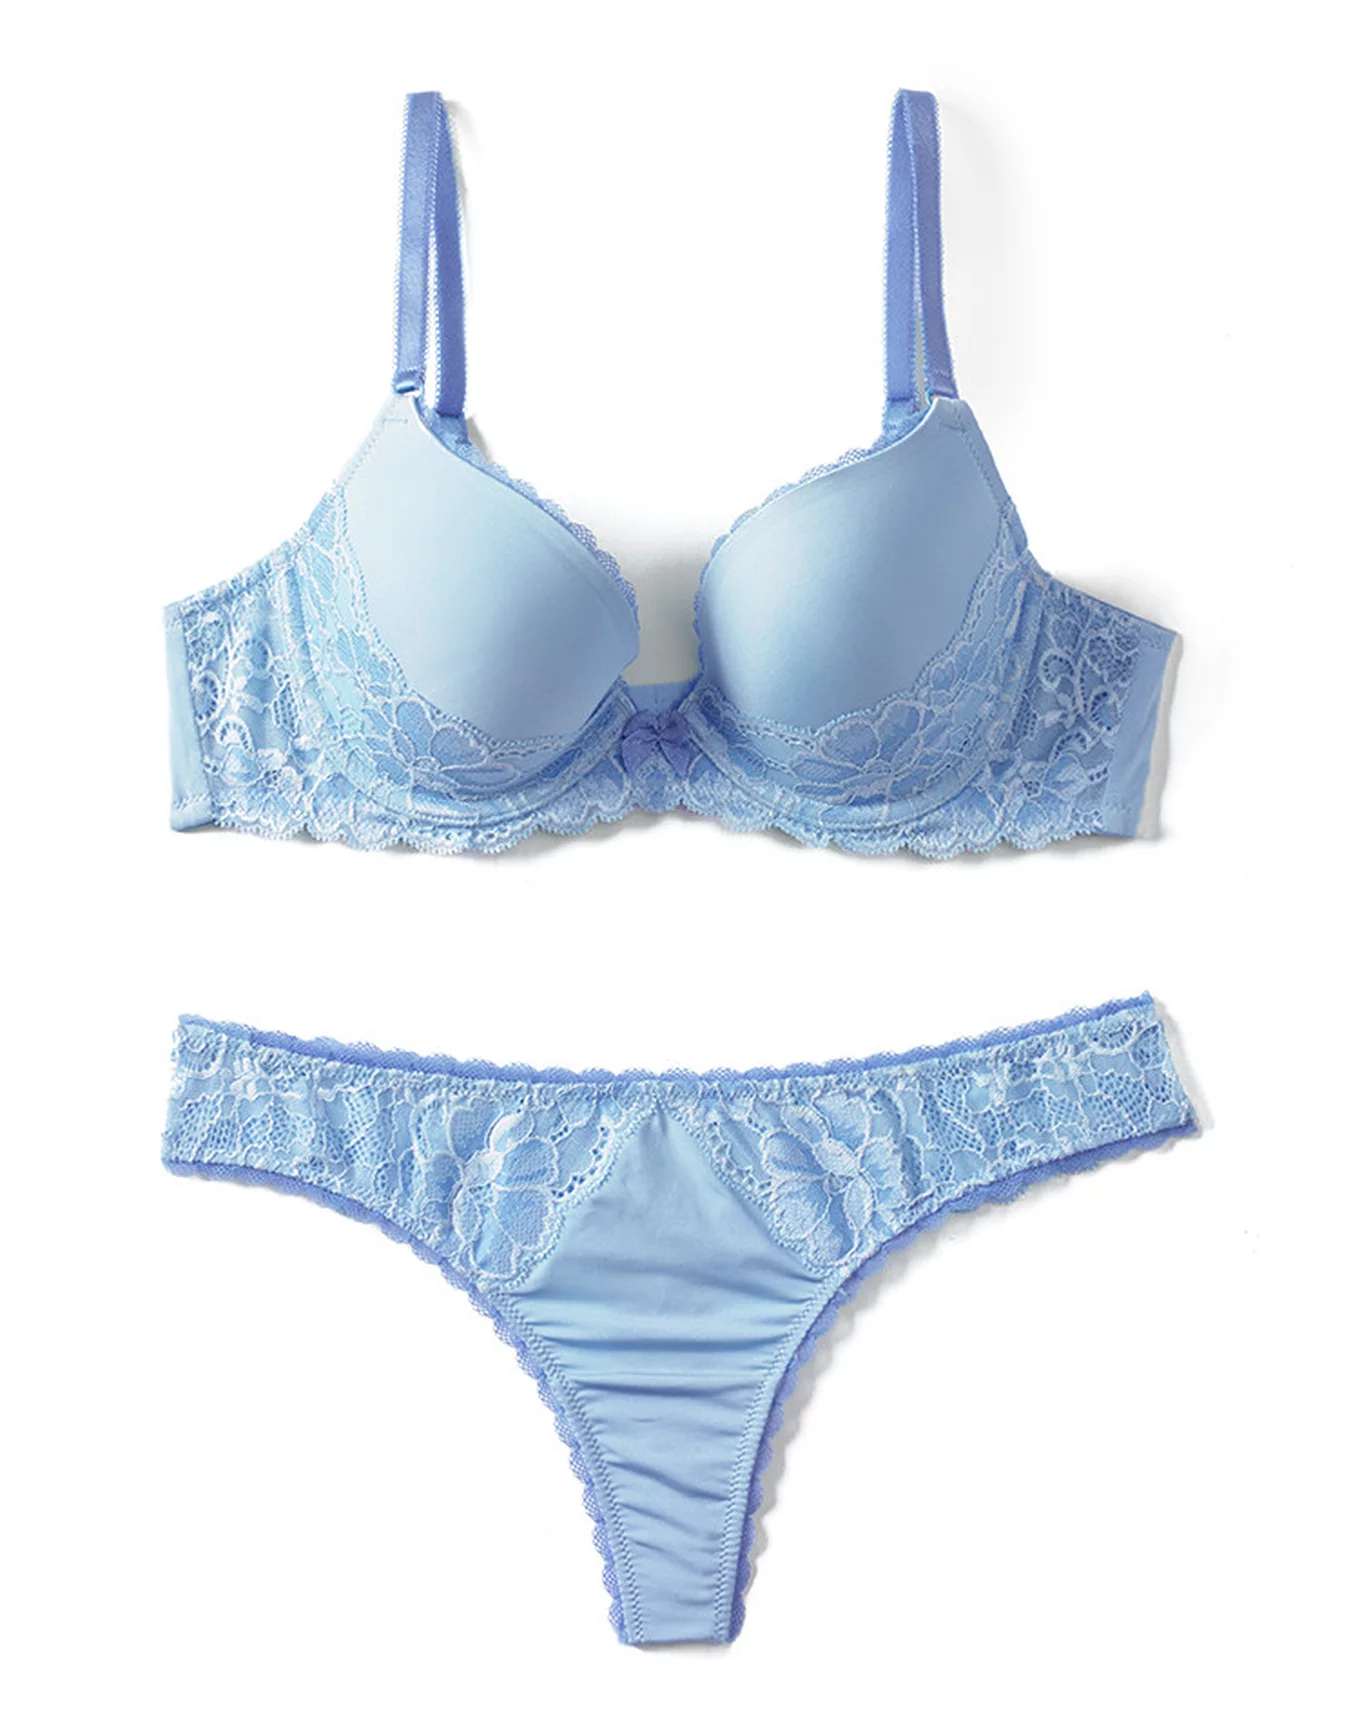 Buy pavvoin Women's Blue Push up Bra Panty Set - Size - 32 at